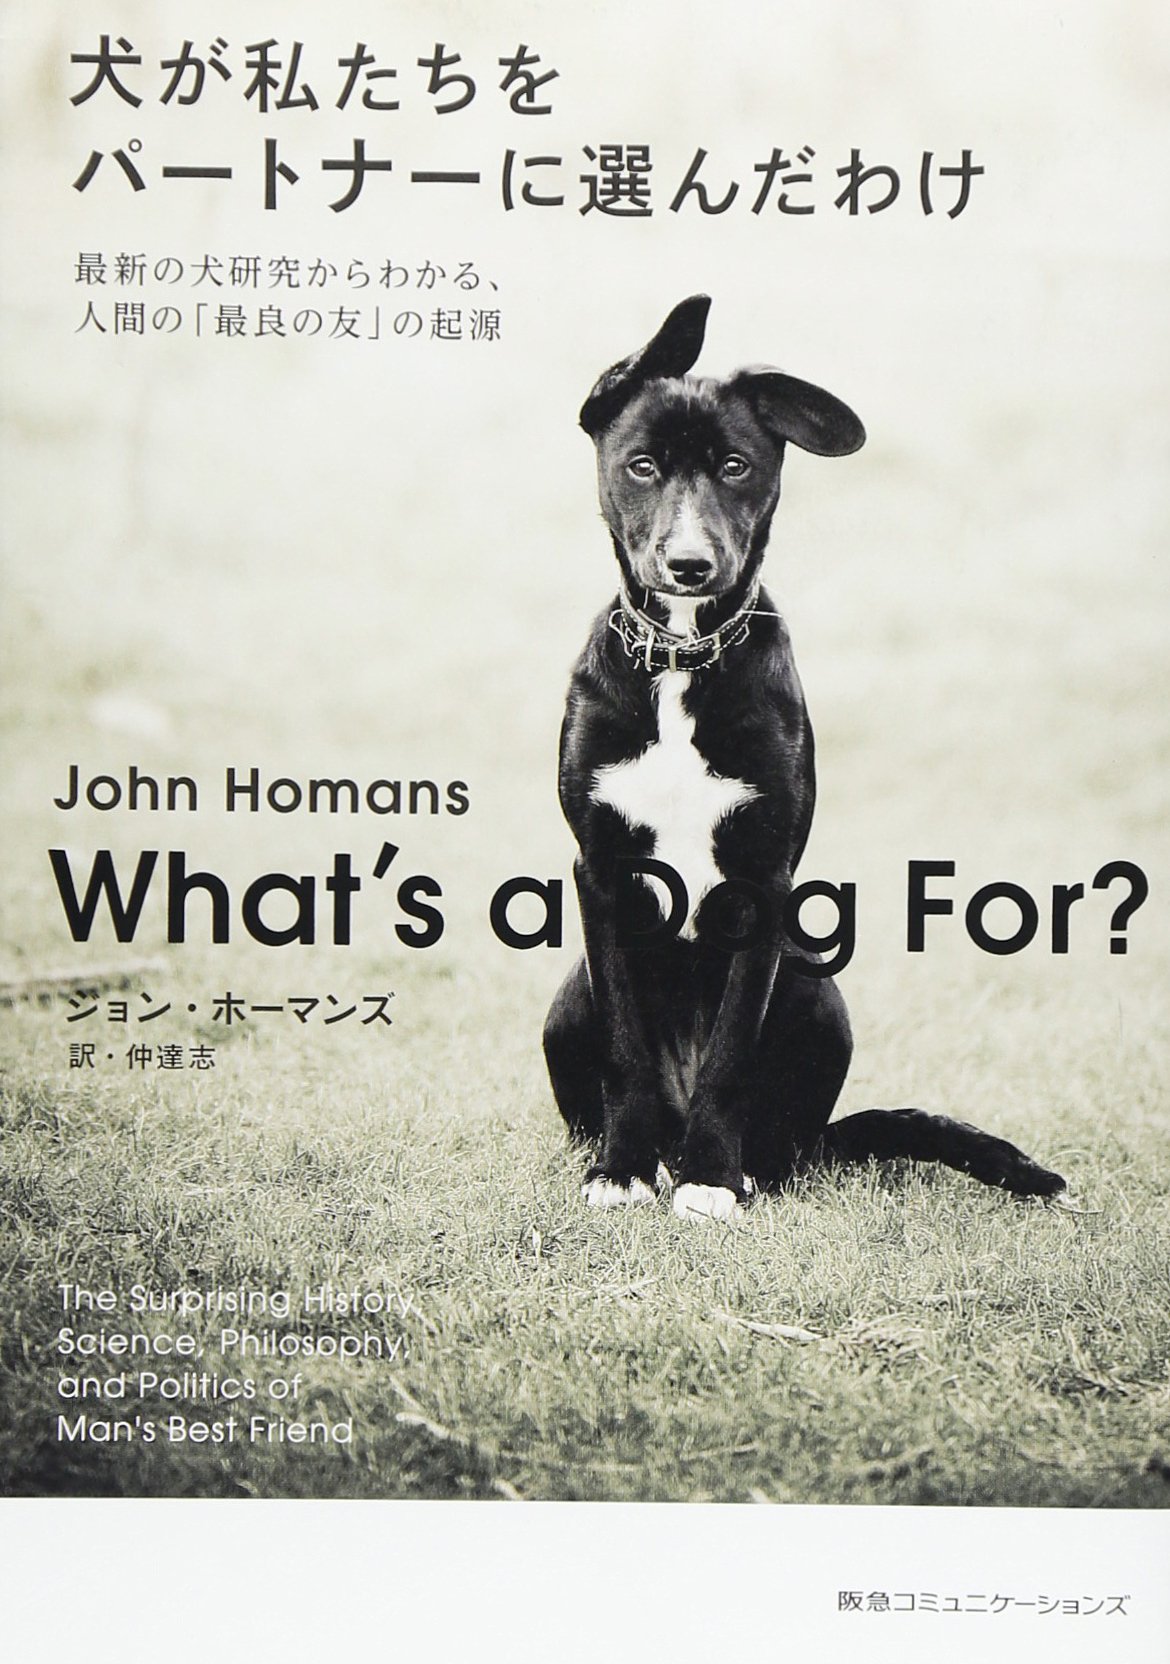 人間社会こそが犬の自然環境である 人間と犬の関係について考えさせられる1冊 ダ ヴィンチニュース